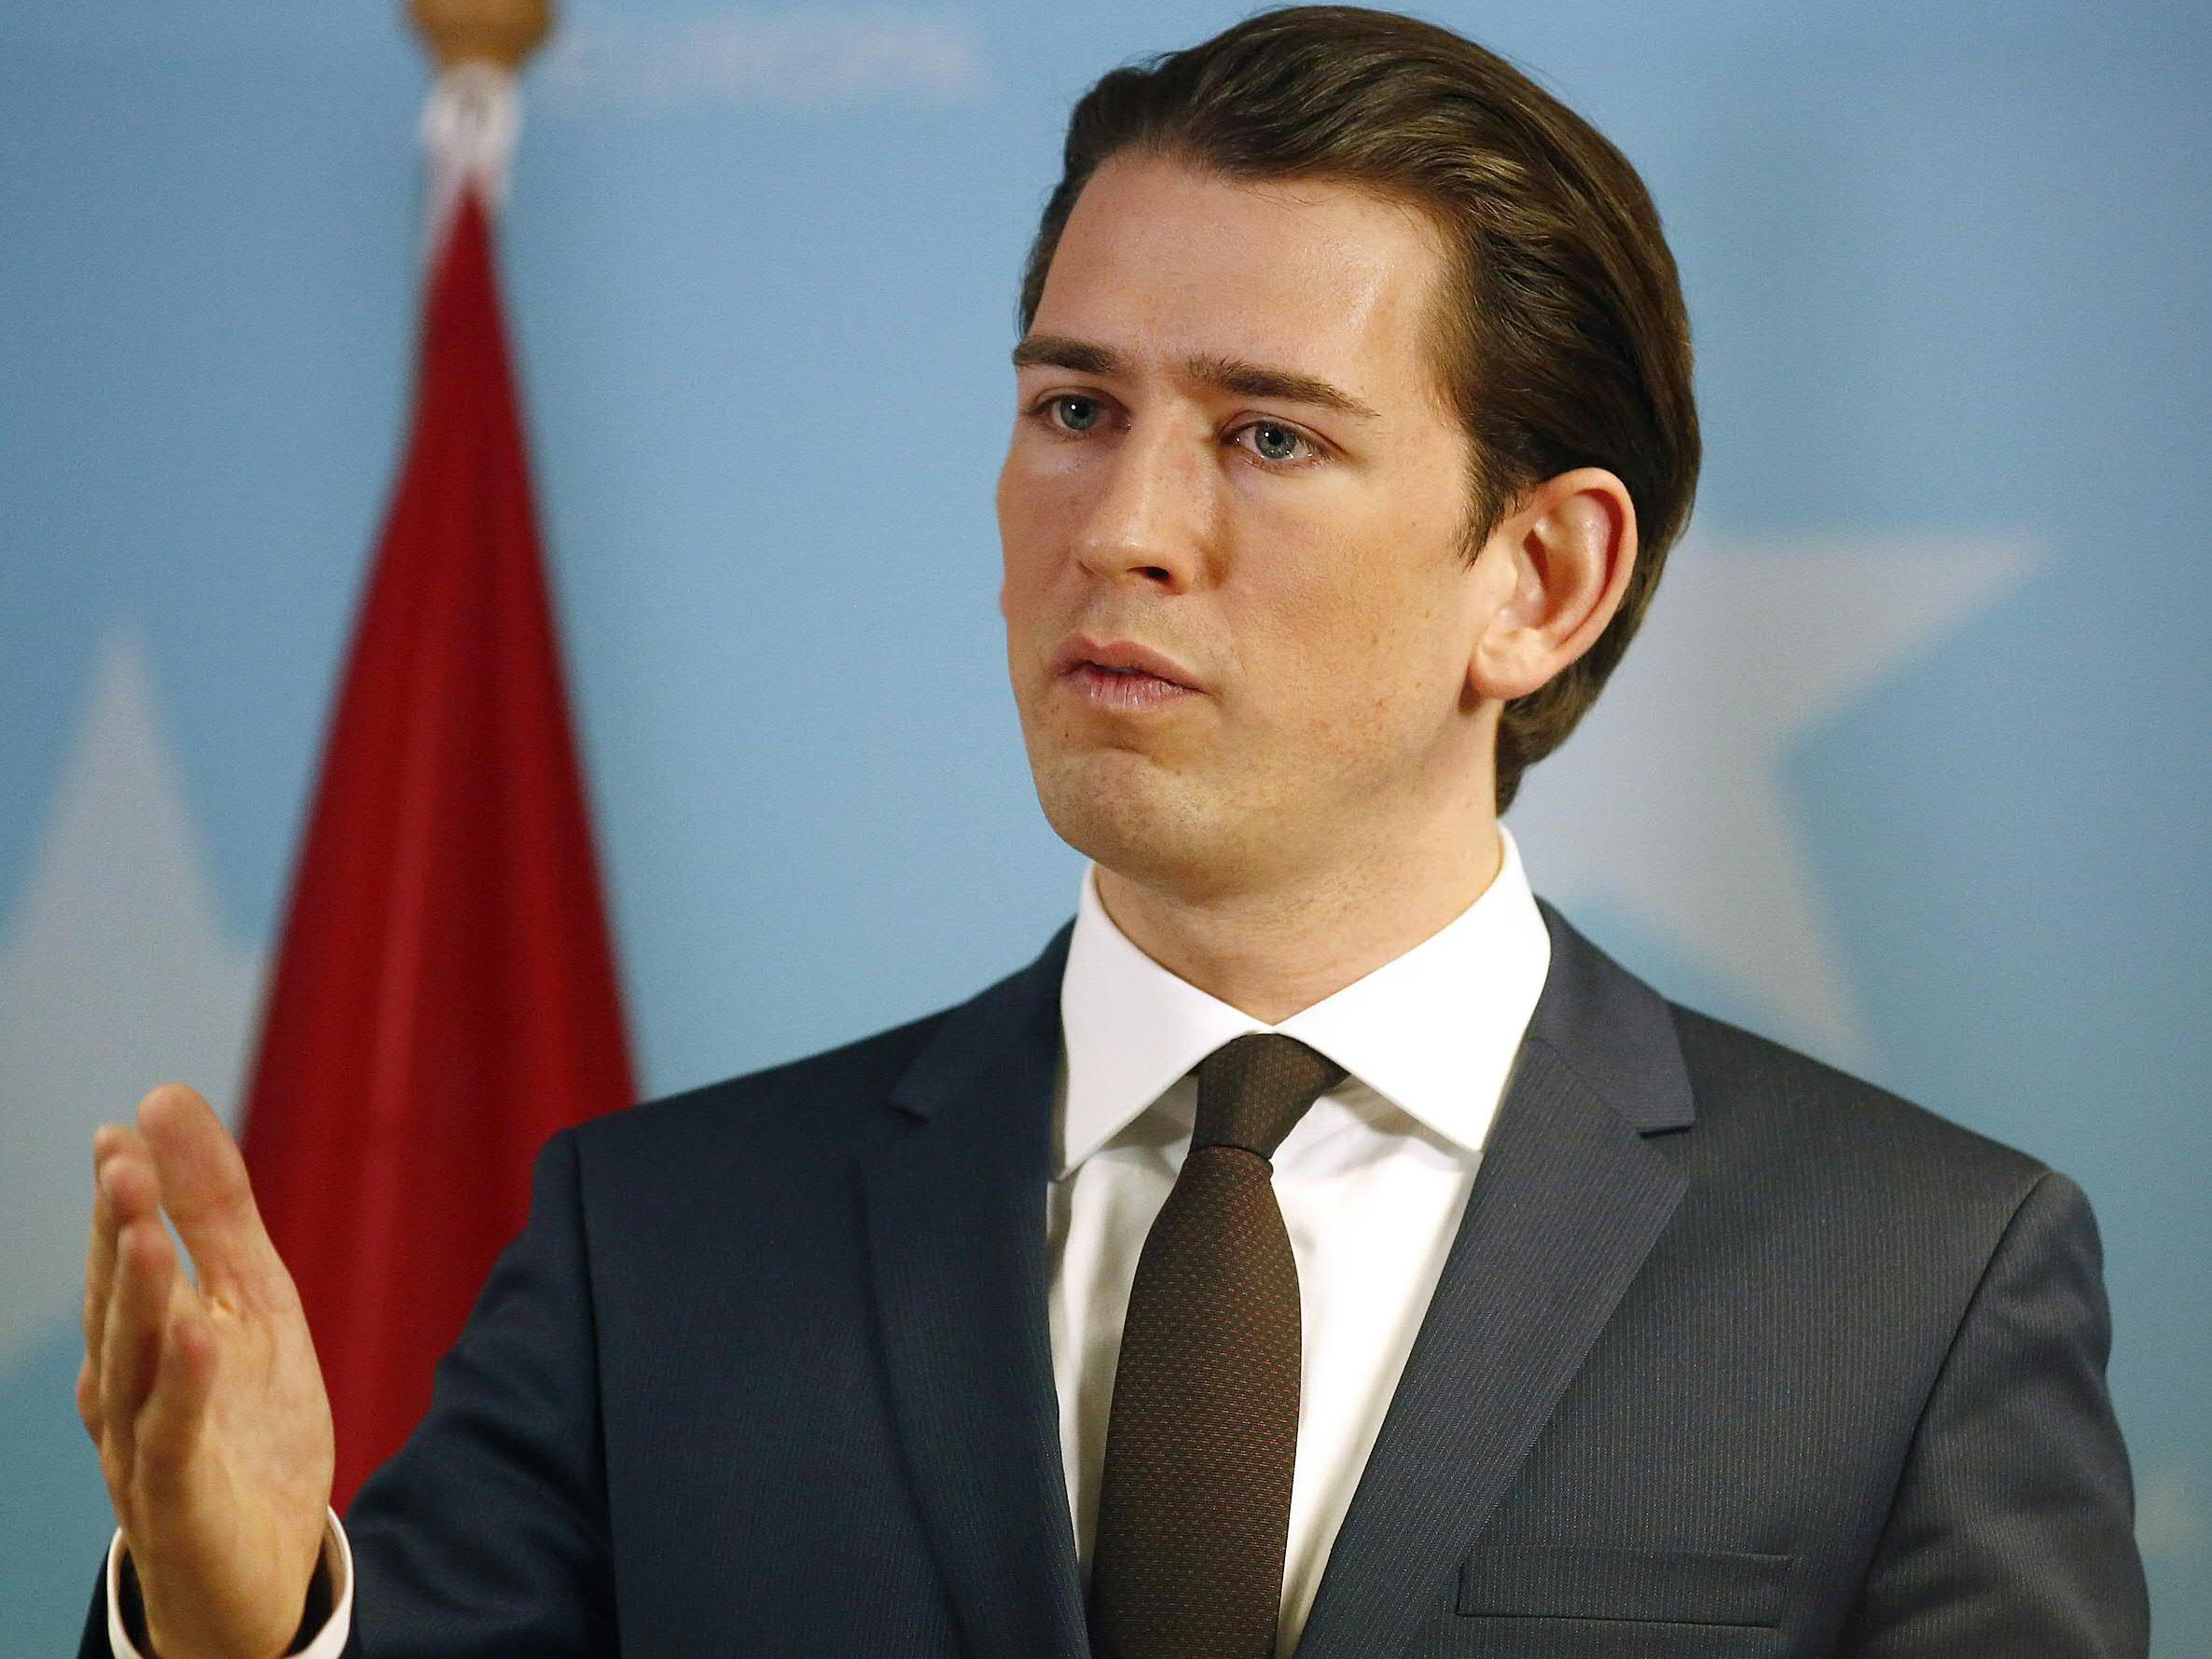 Österreichs Außenminister Sebastian Kurz (ÖVP) will Ländern die Entwicklungshilfe kürzen, wenn sie abgelehnte Asylbewerber nicht zurücknehmen.